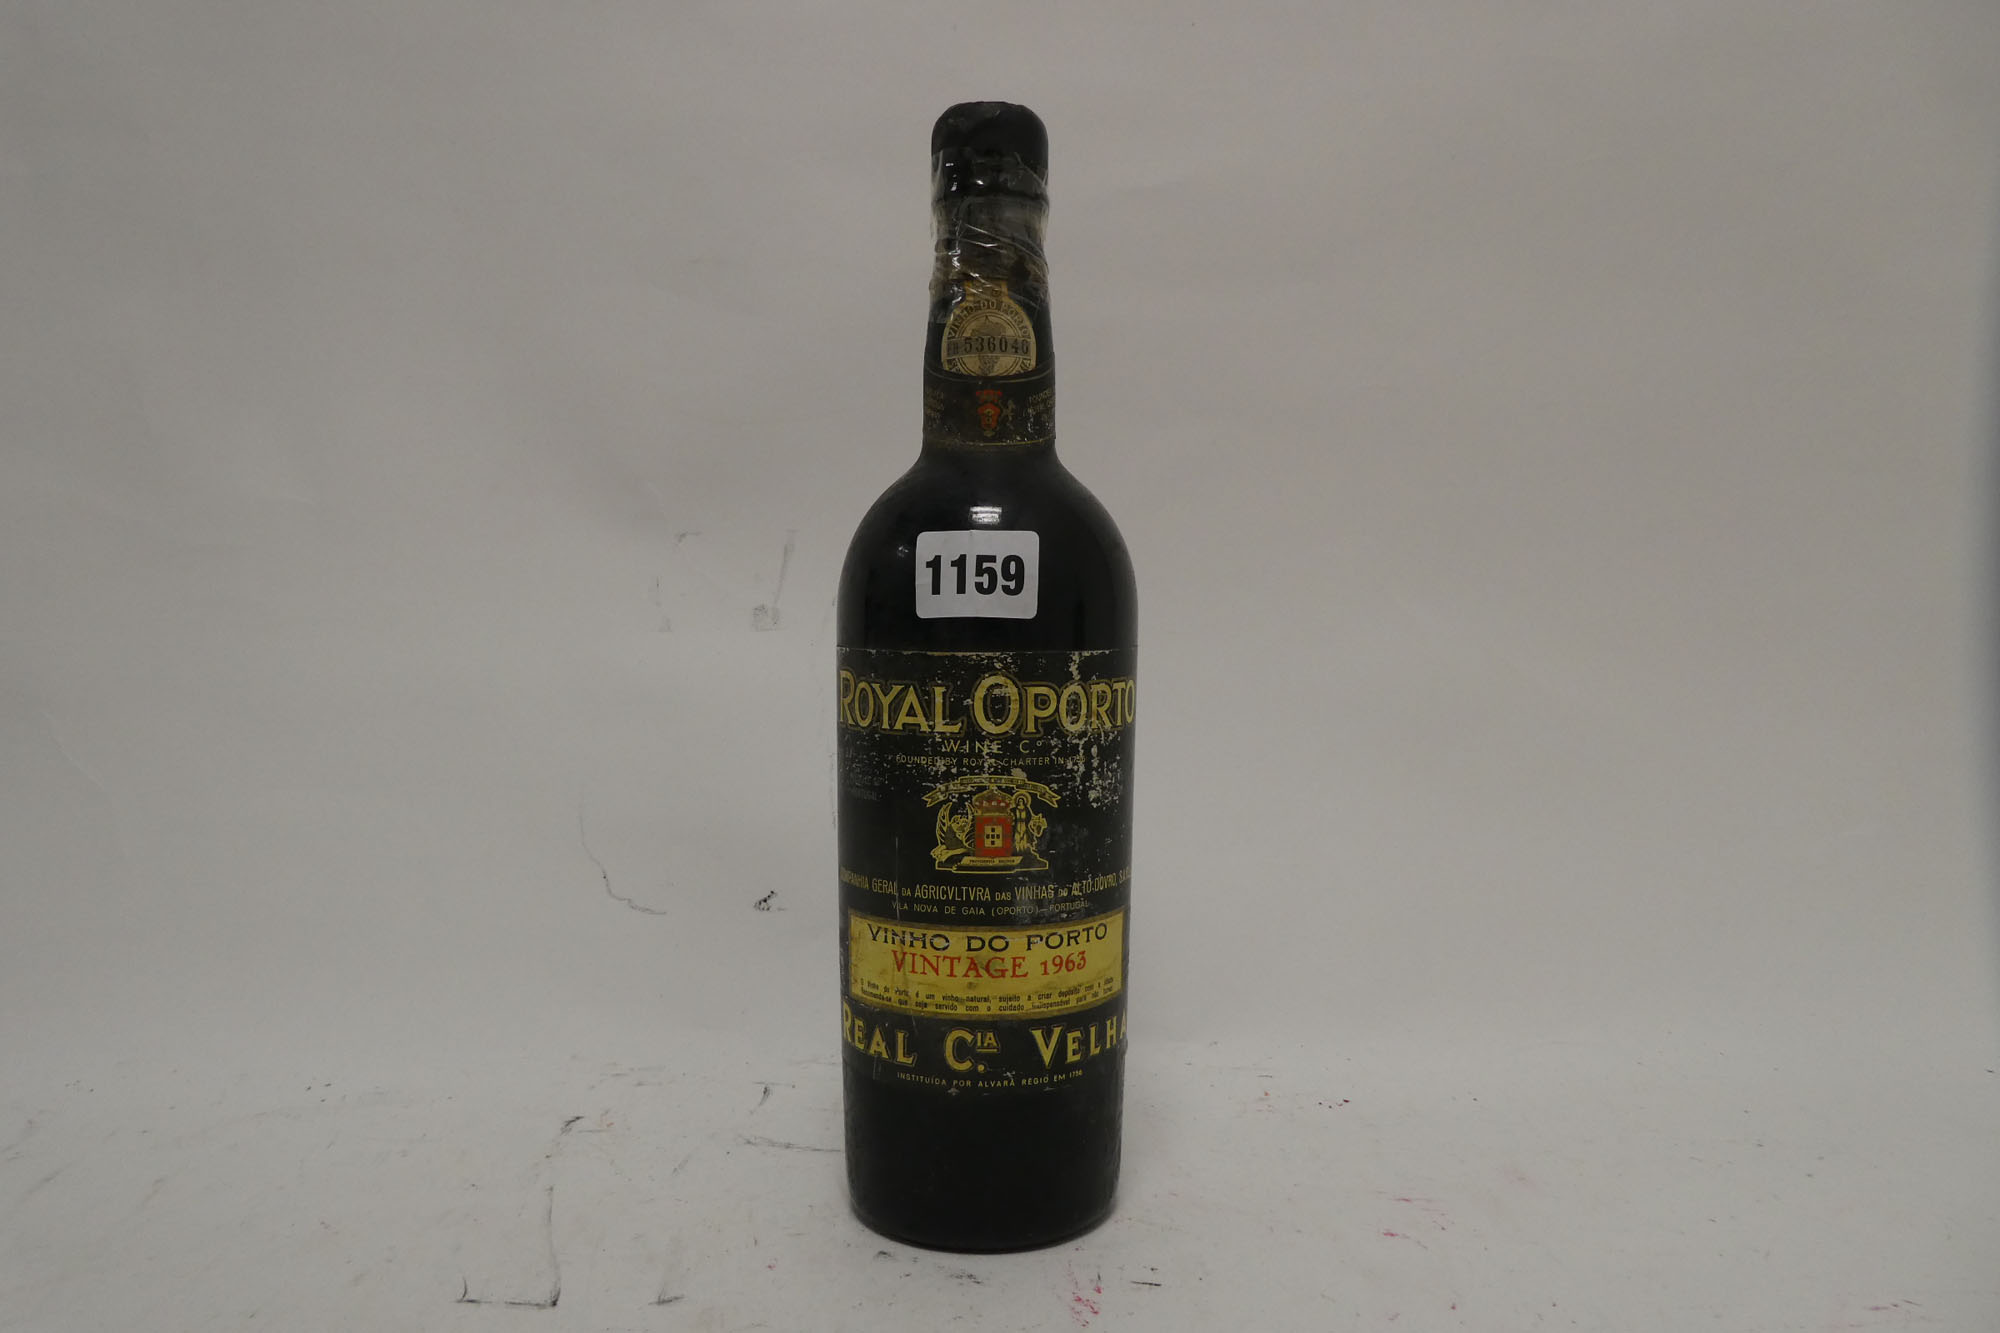 A bottle of Real Cia Velha Royal Oporto 1963 Vintage Port